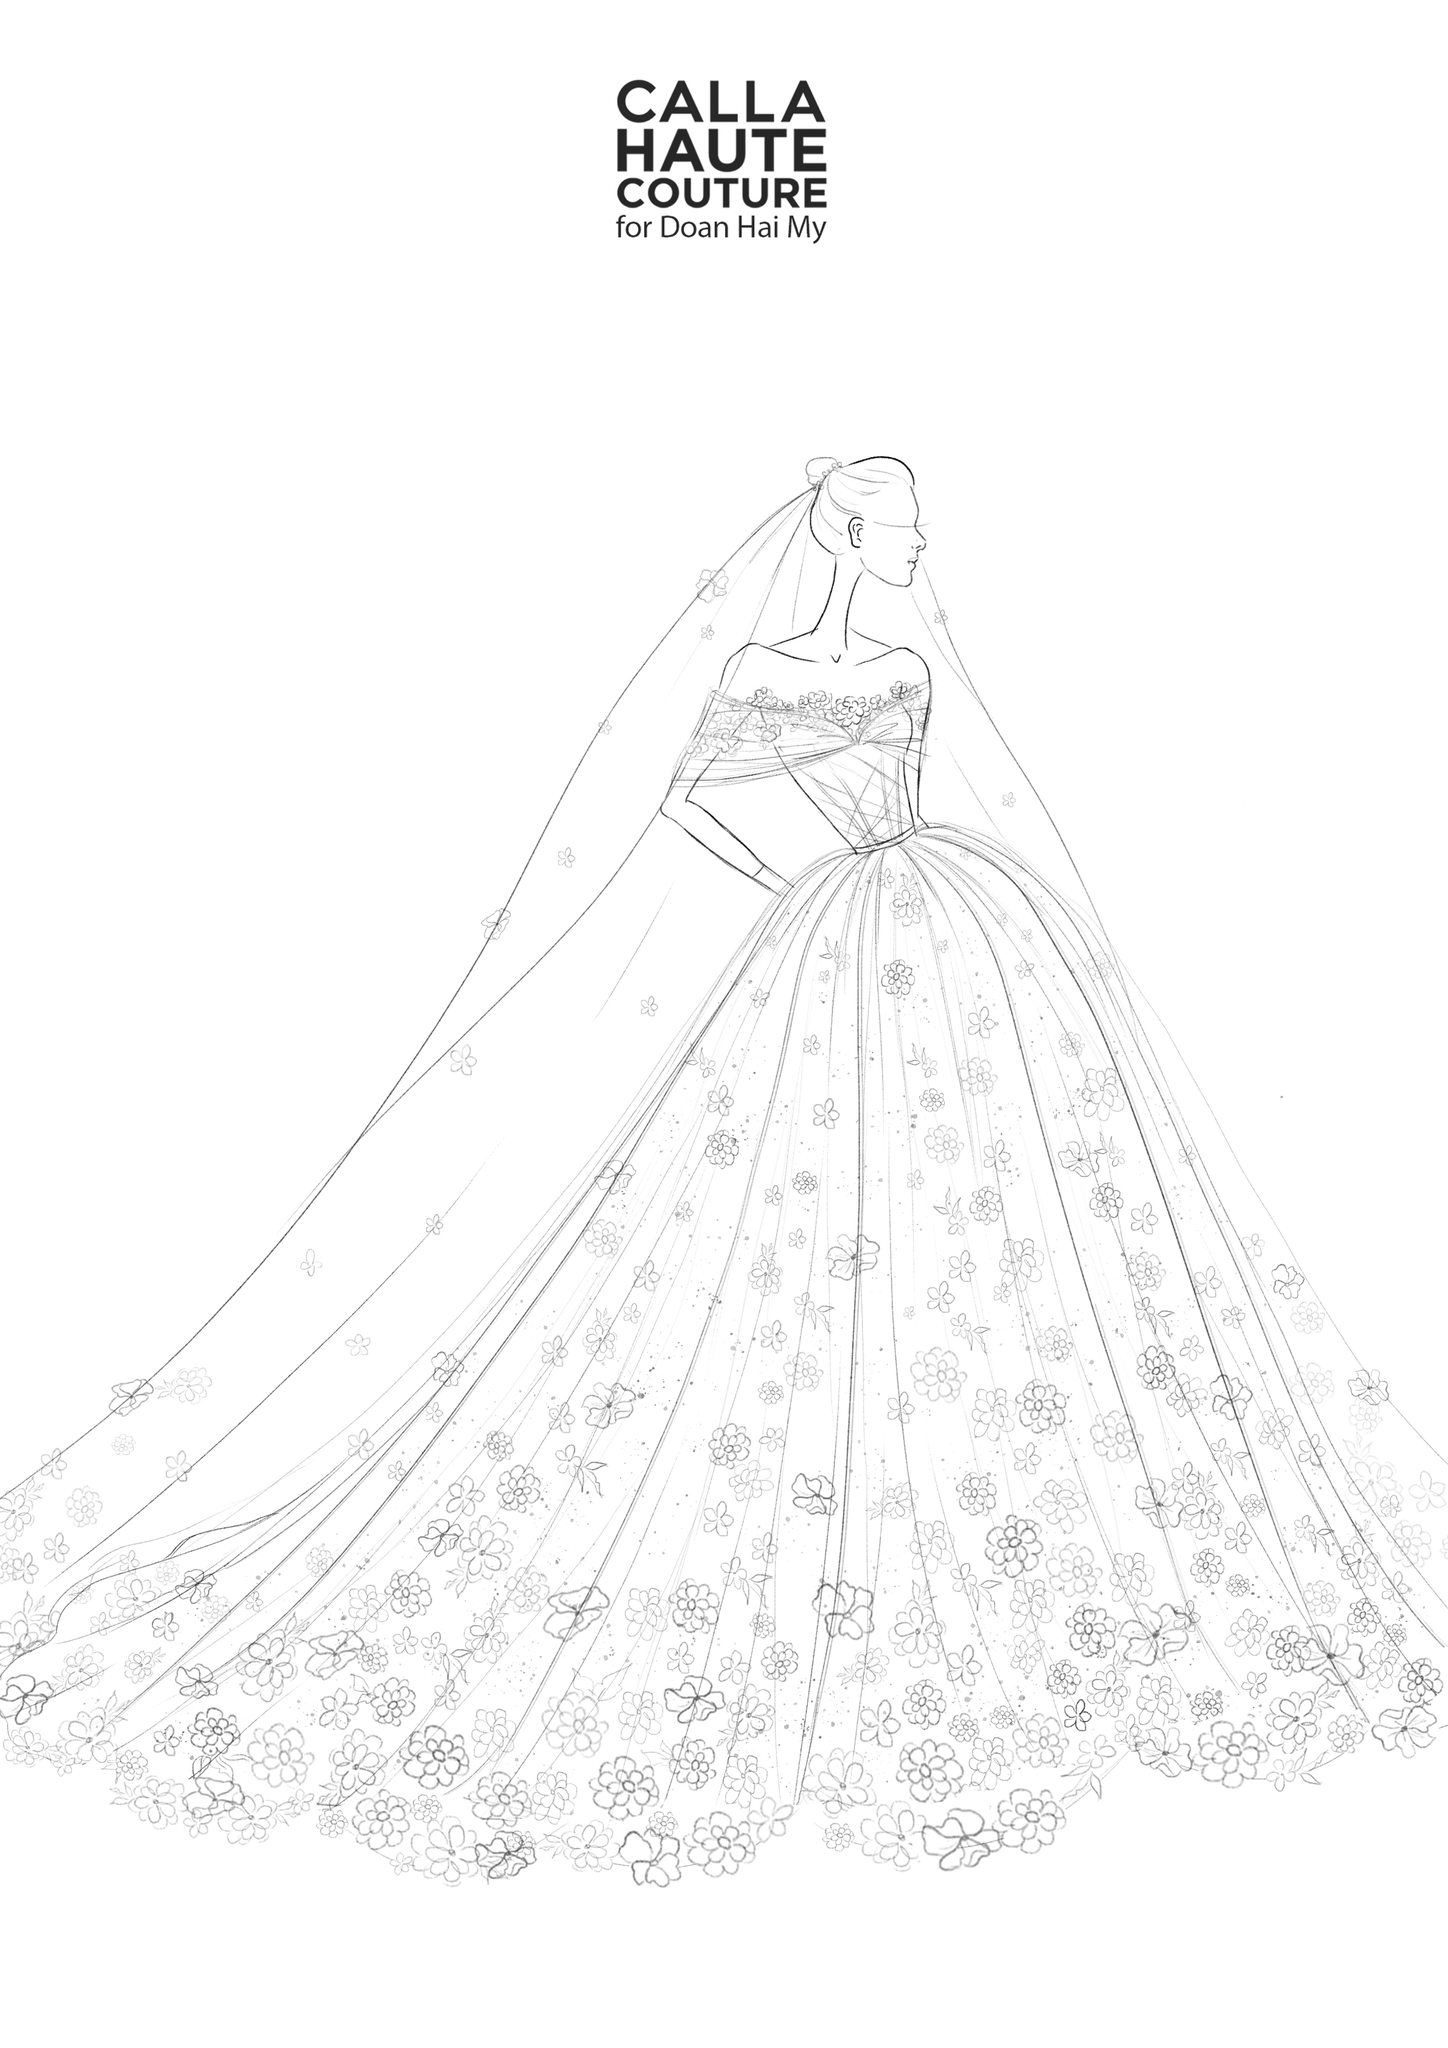 Váy cưới của Doãn Hải My: Thiết kế phủ ren ngọt ngào, cô dâu đội khăn voan đẹp tựa công chúa-5